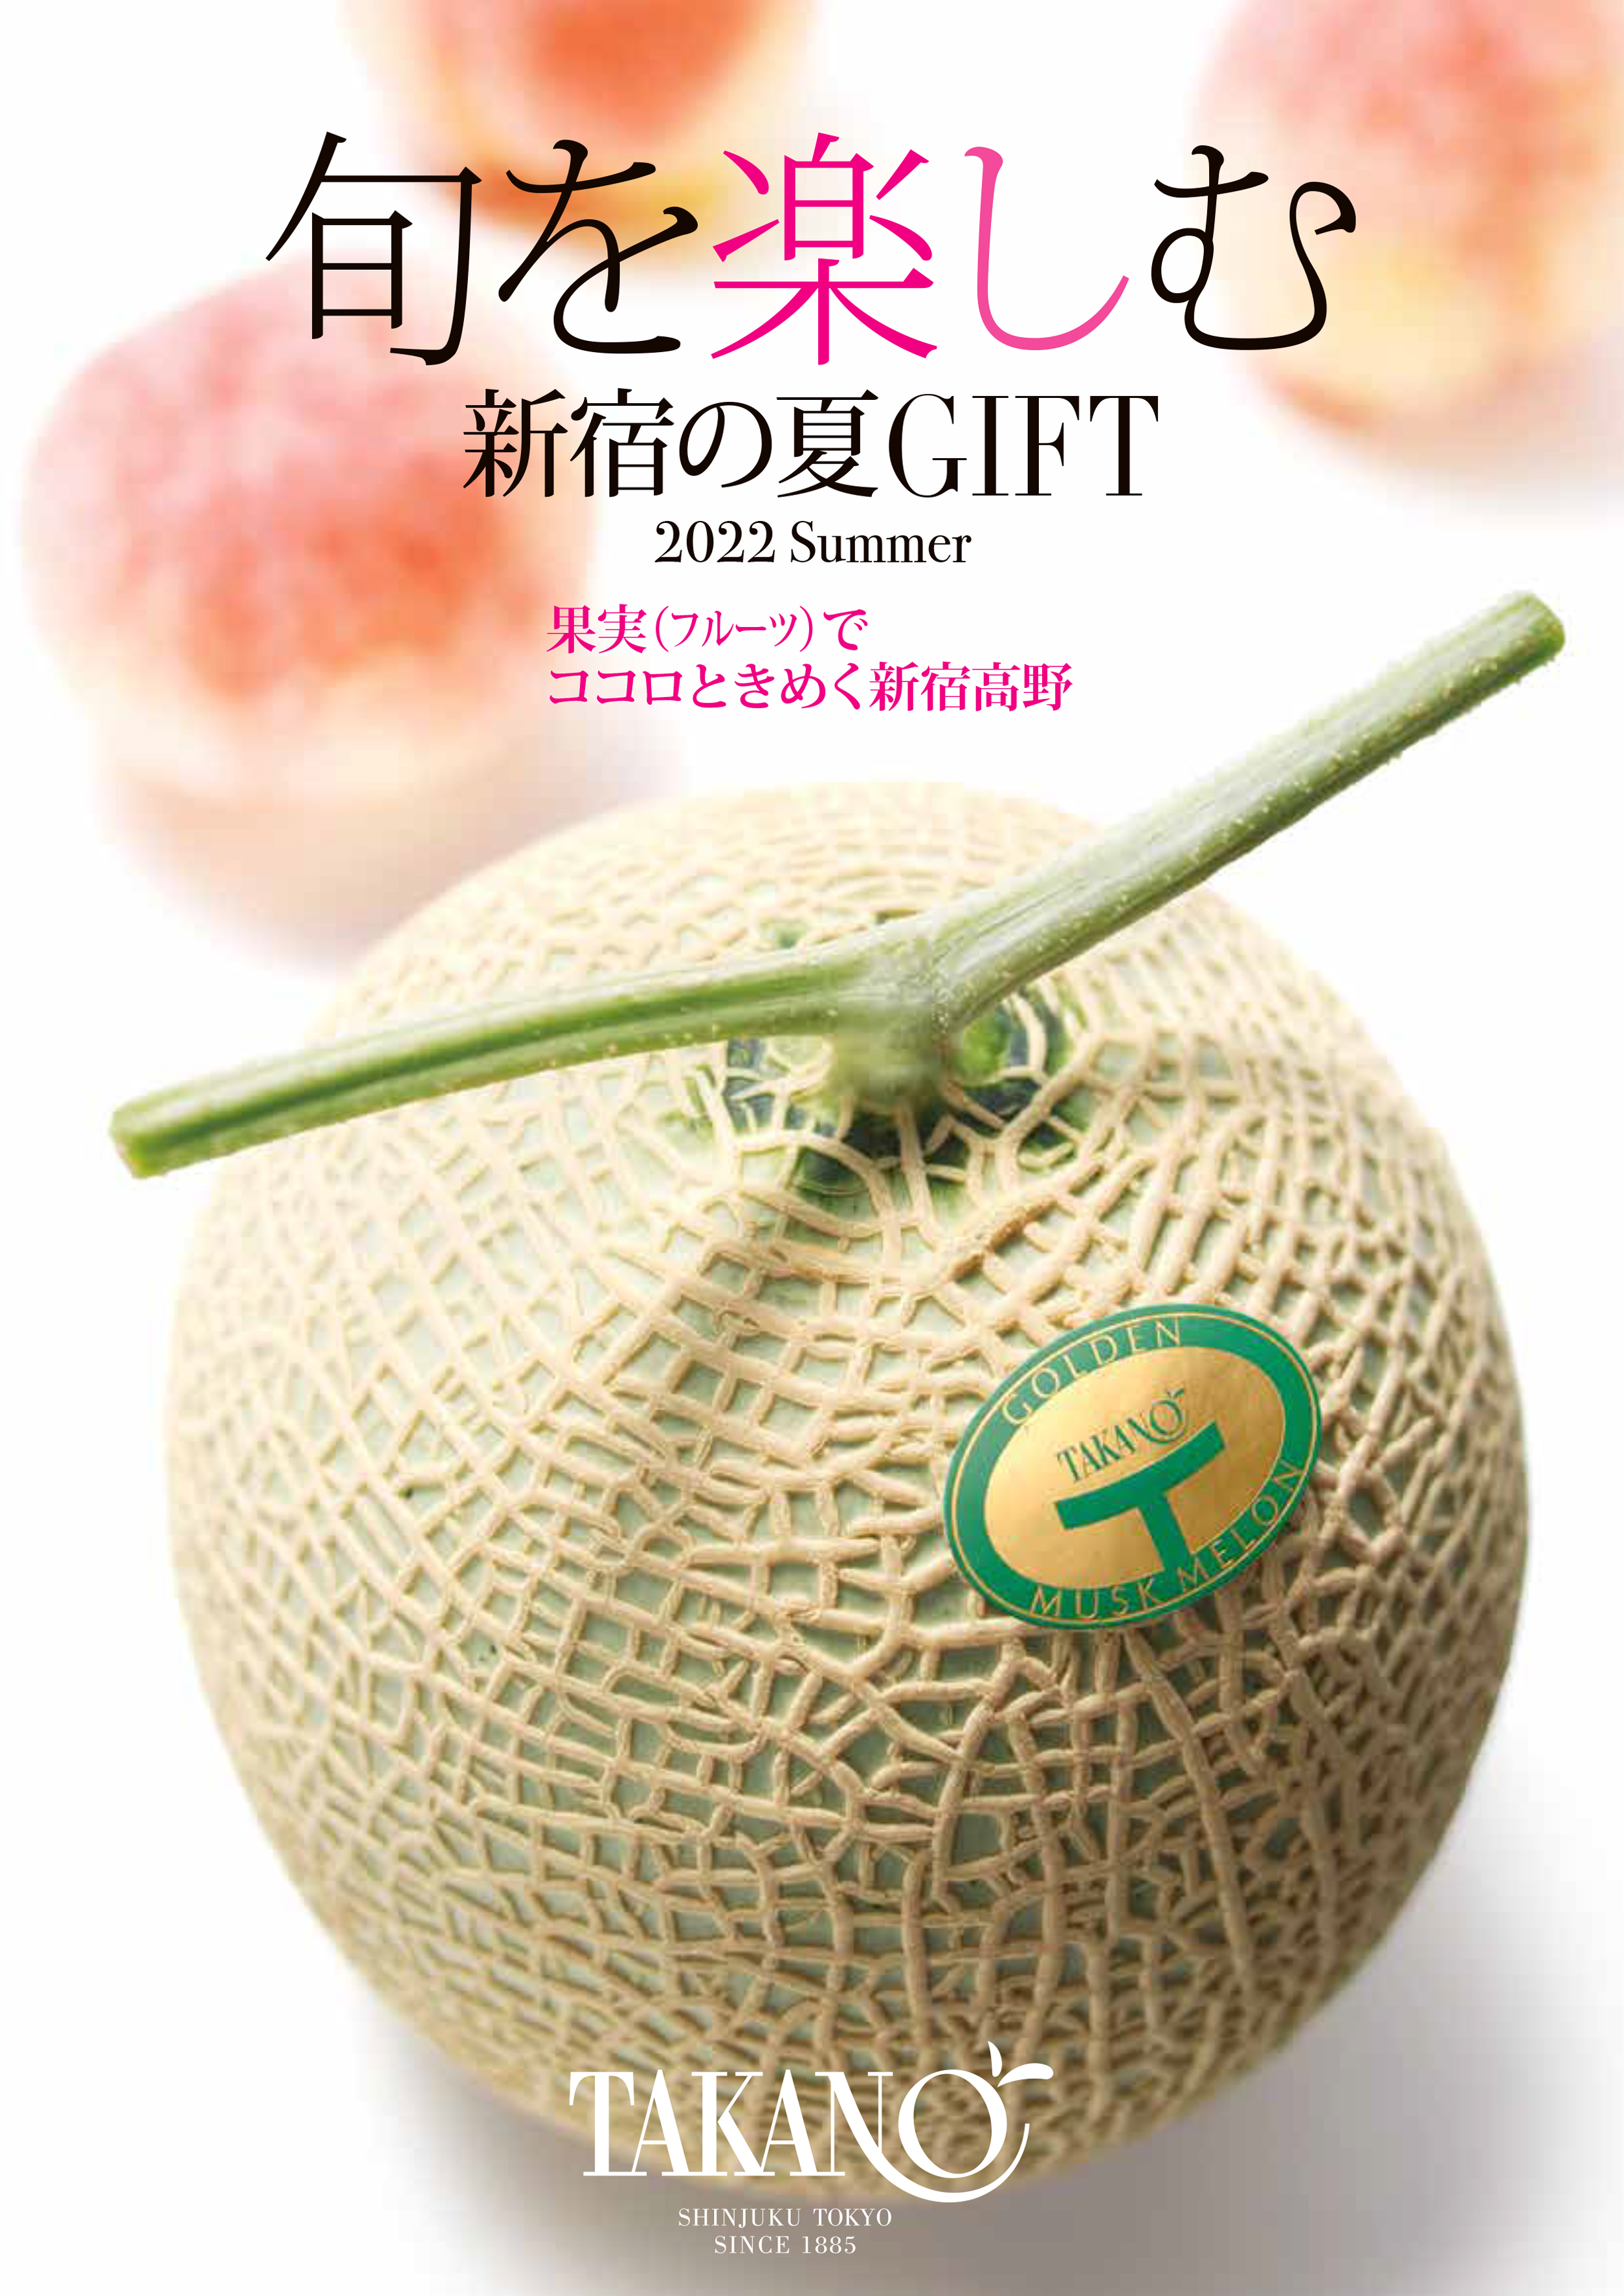 カタログ | フルーツギフトの果物専門店 新宿高野